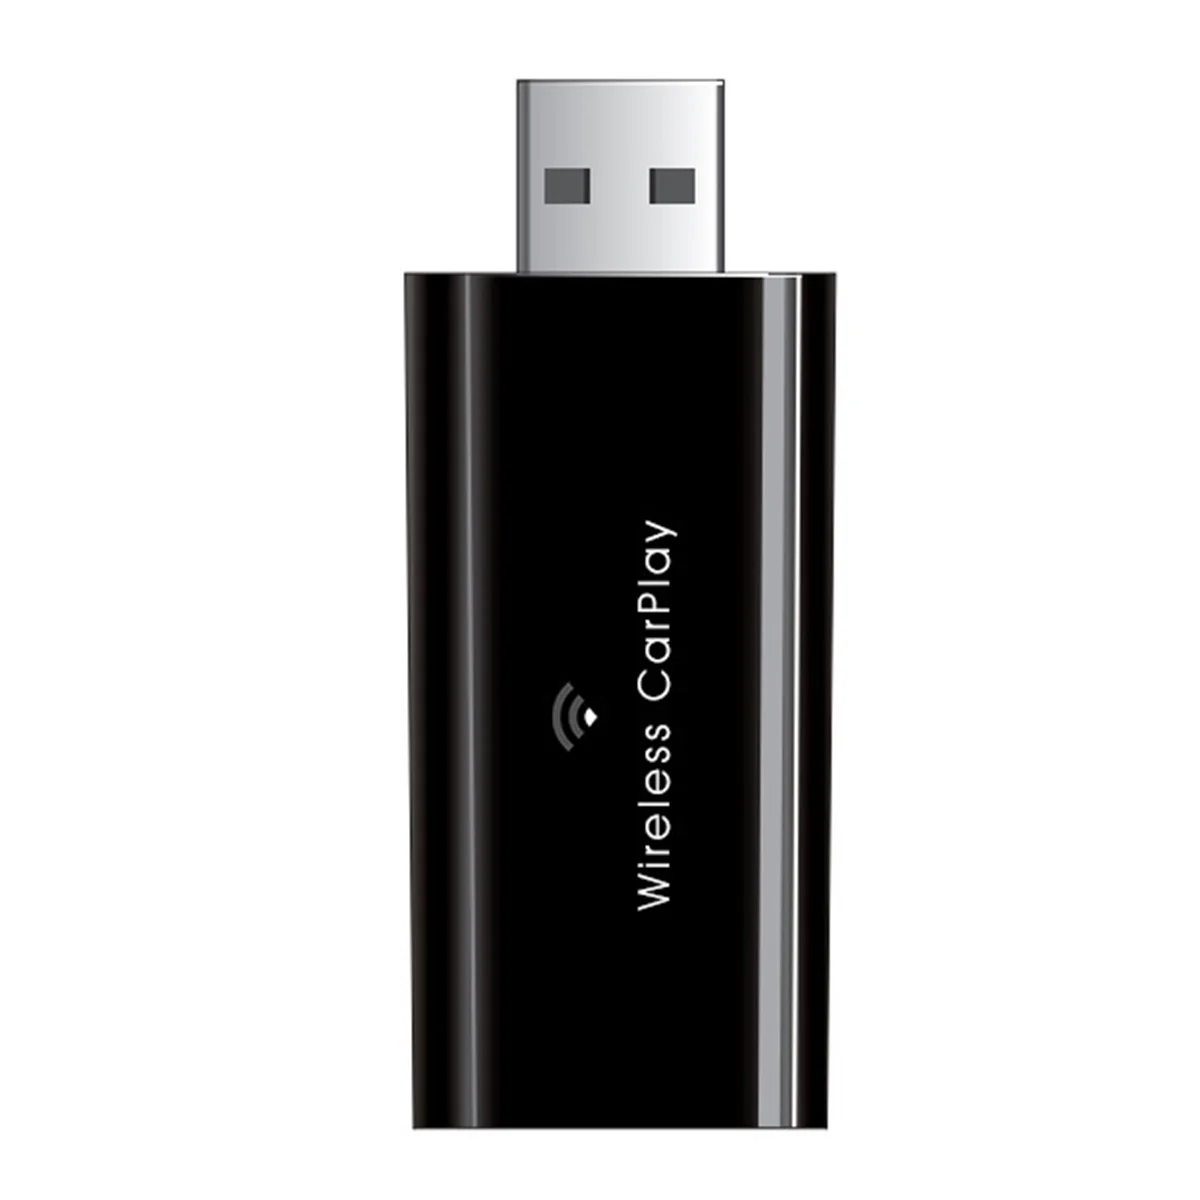 USB Беспроводной адаптер CarPlay 5 ГГц WiFi Самый быстрый, самый маленький и тонкий беспроводной адаптер CarPlay для IOS проводных автомобилей CarPlay